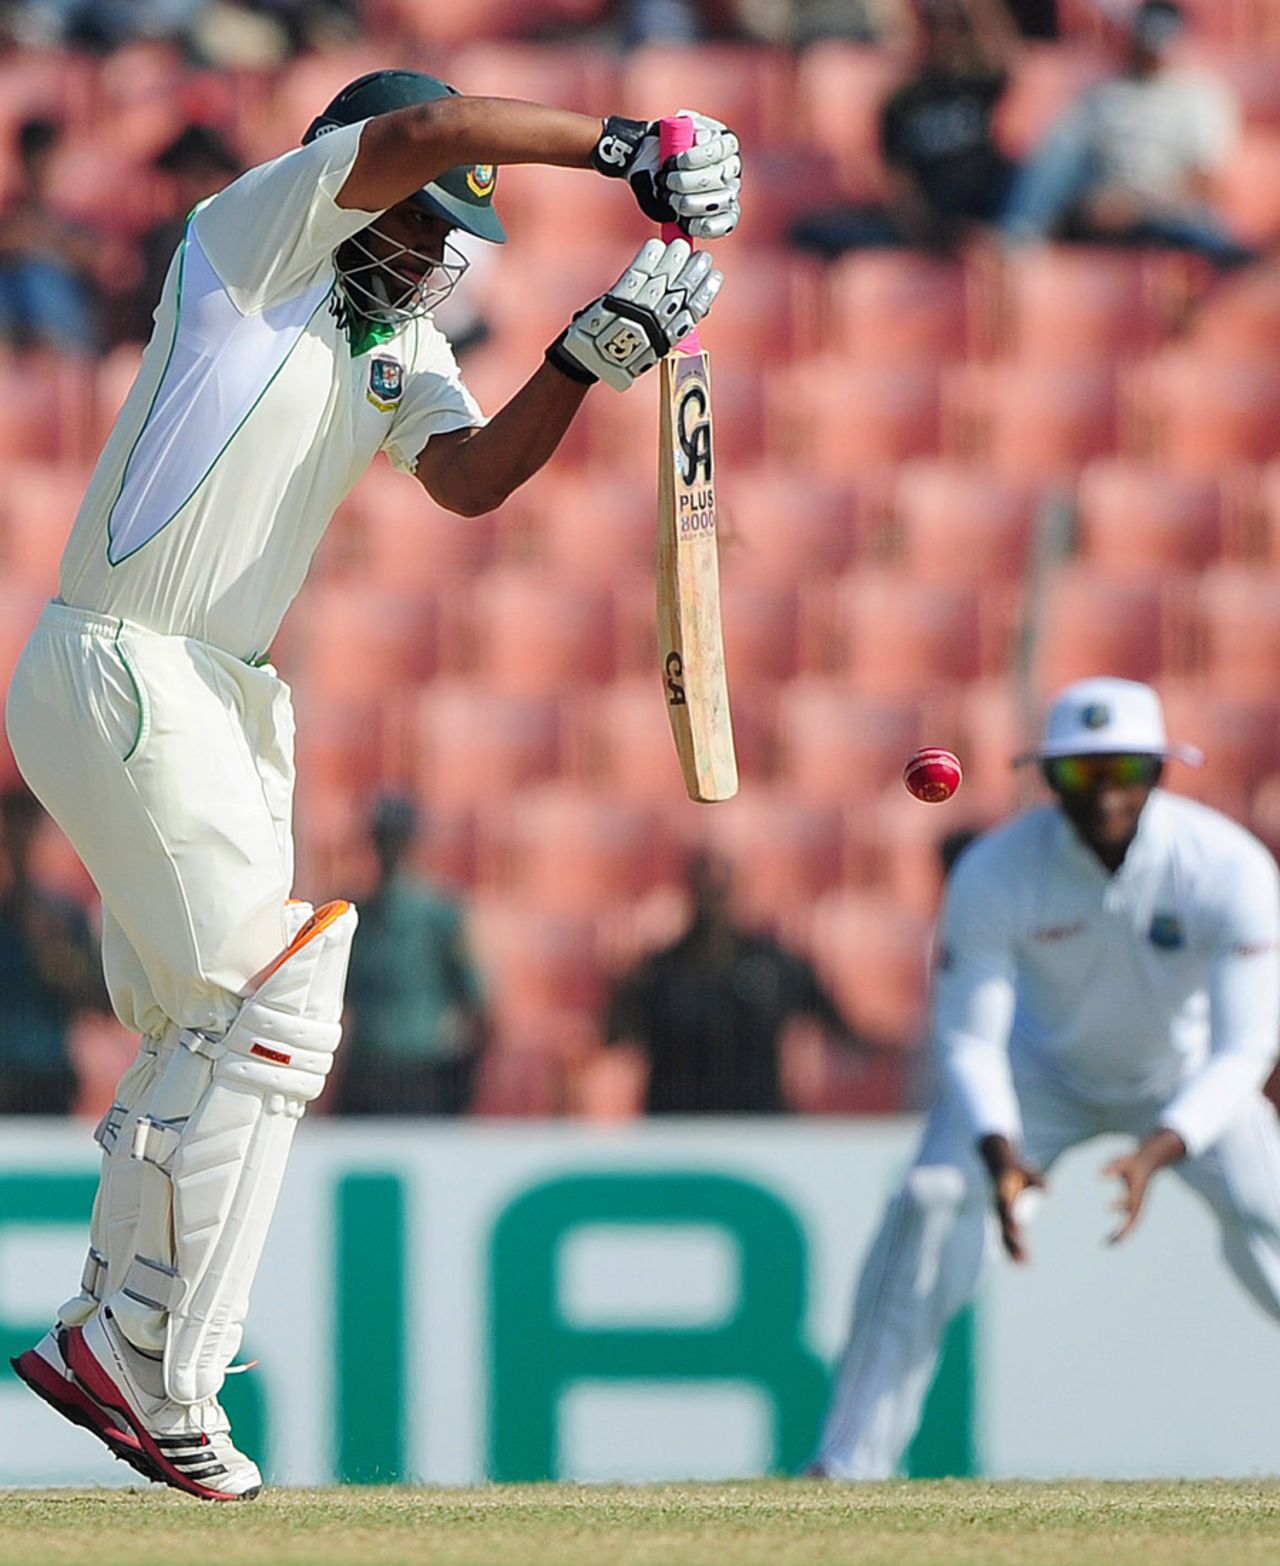 Tamim Iqbal defends, Bangladesh v West Indies, 2nd Test, Khulna, 1st day, November 21, 2012